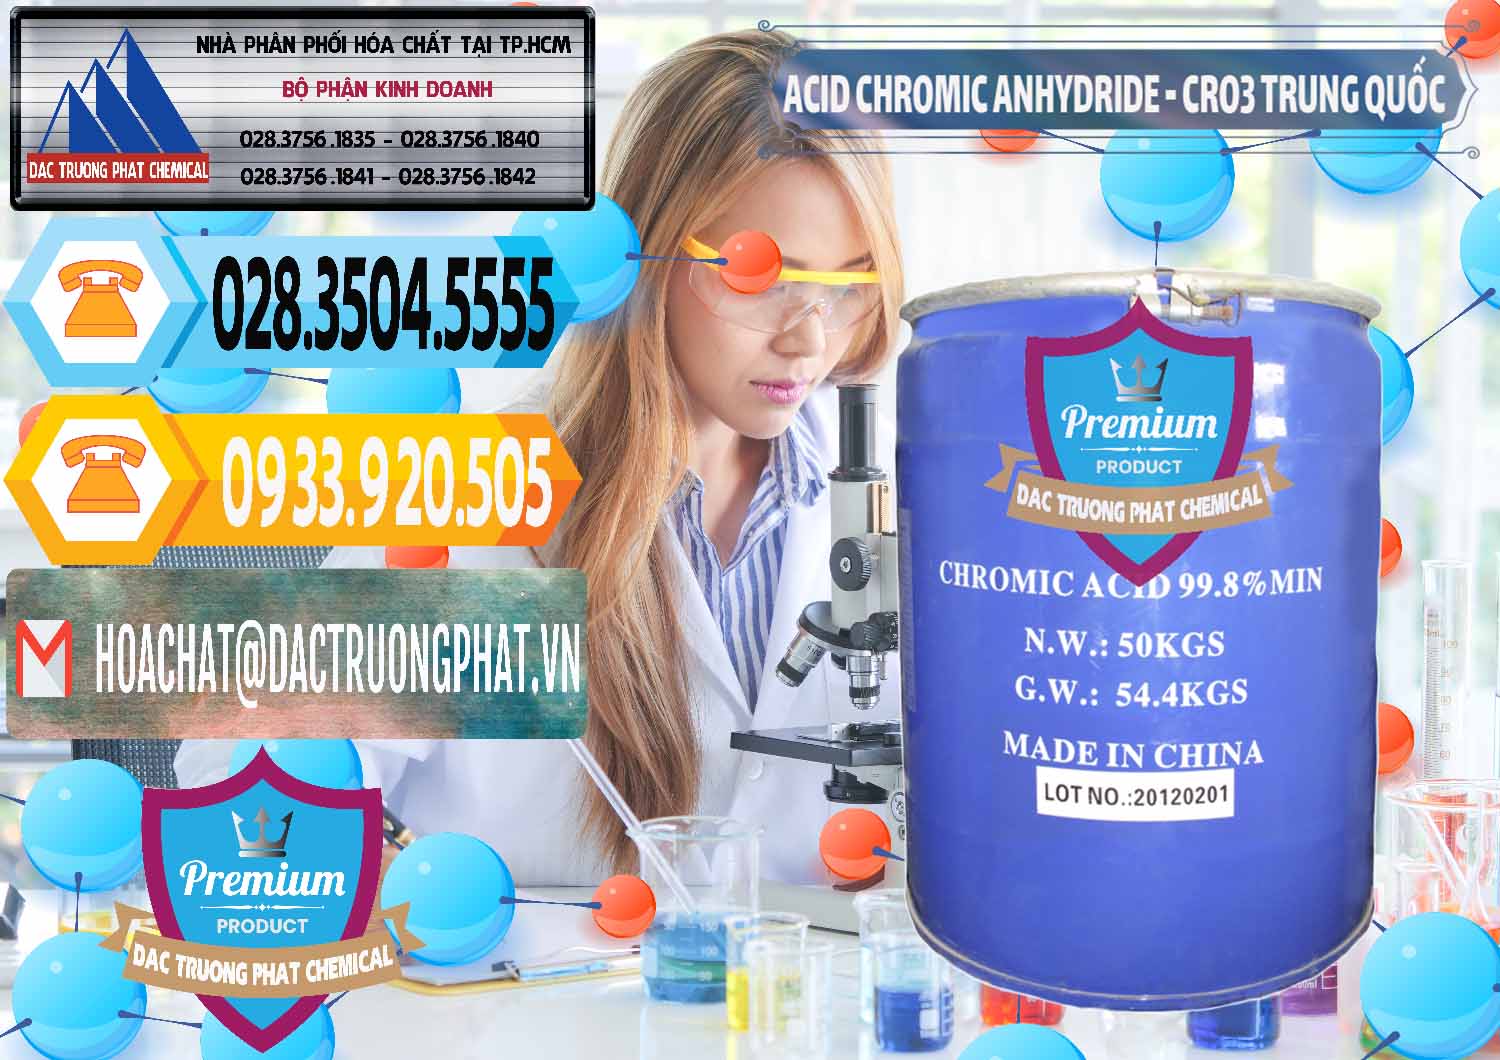 Công ty chuyên bán và cung ứng Acid Chromic Anhydride - Cromic CRO3 Trung Quốc China - 0007 - Cty kinh doanh ( cung cấp ) hóa chất tại TP.HCM - hoachattayrua.net